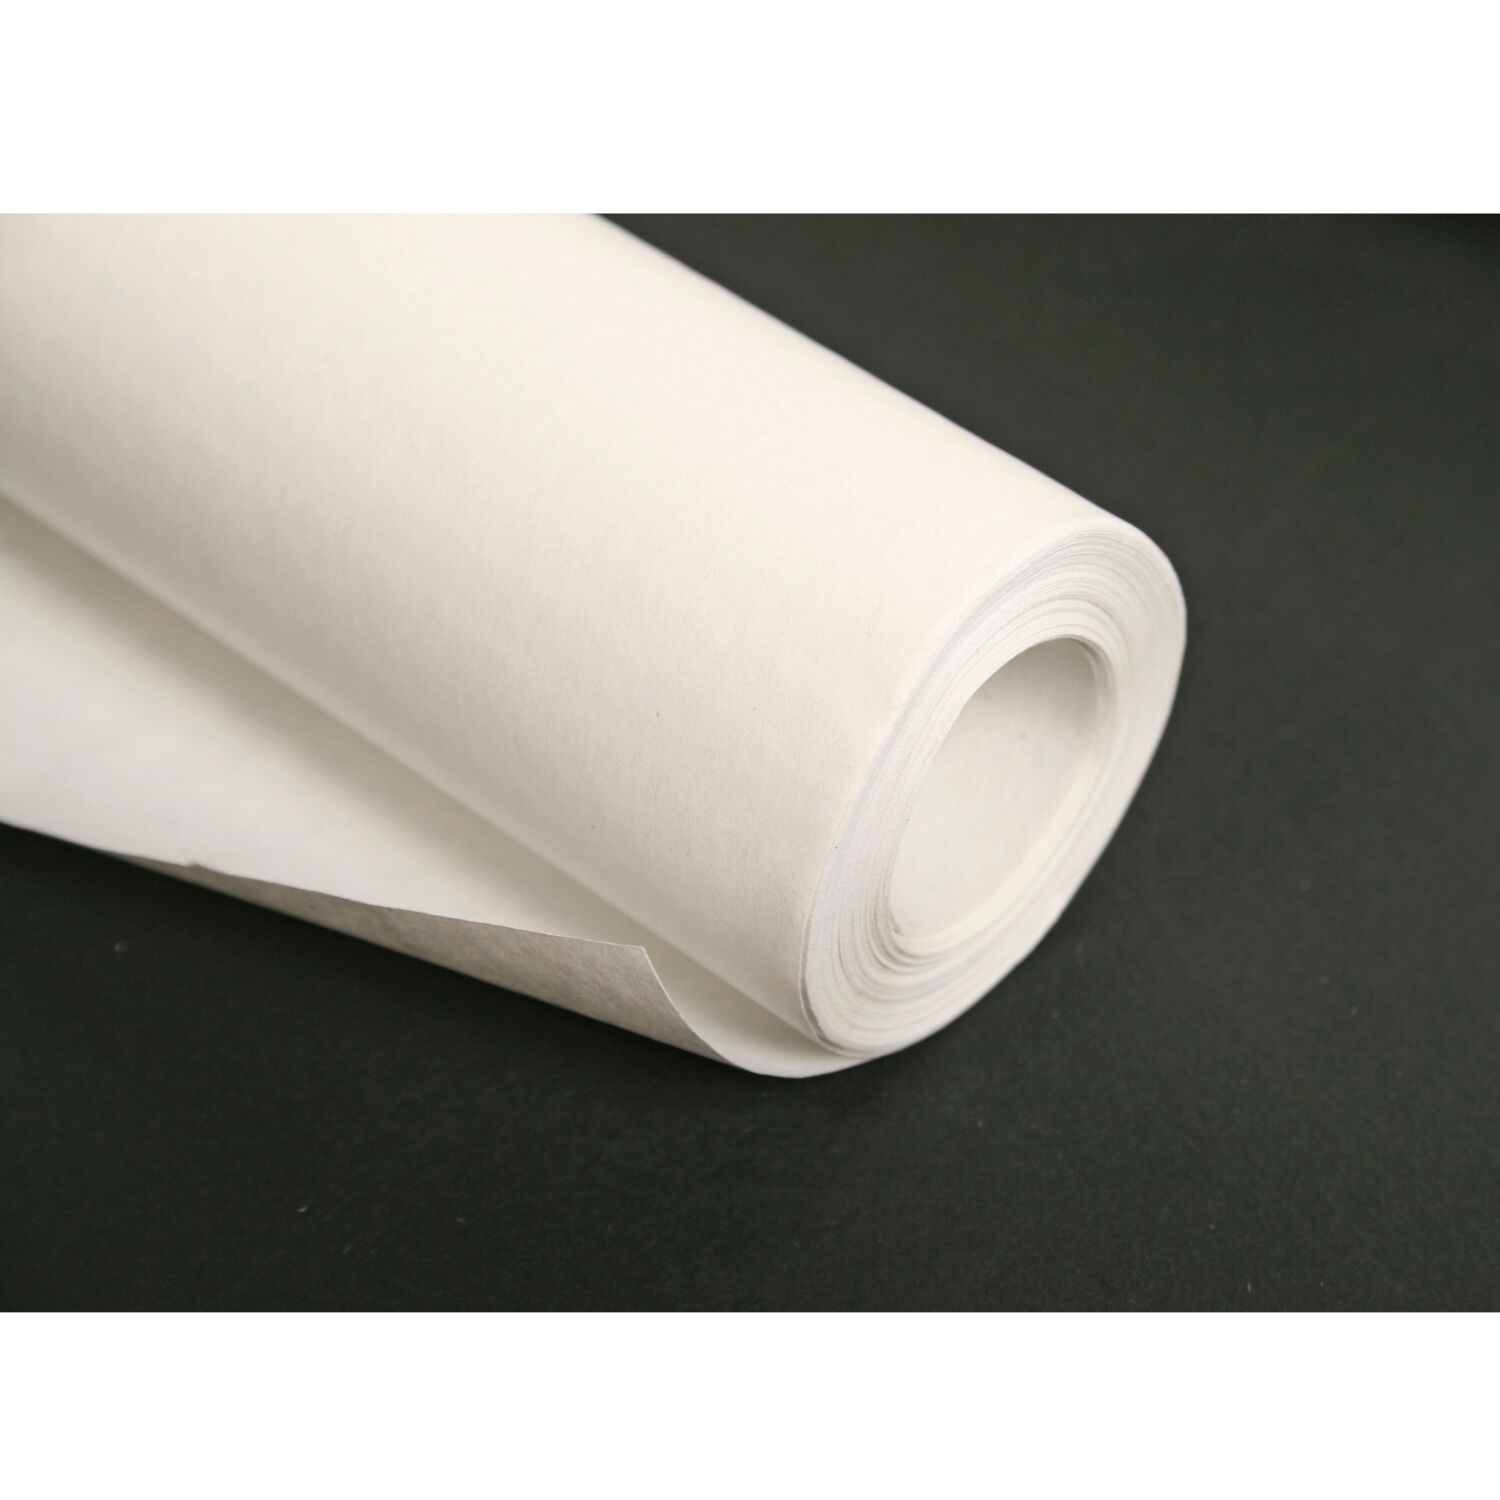 NEU Clairefontaine Kraftpapier Weiß, 1 x 10 m Rolle, 60g/qm Bild 2